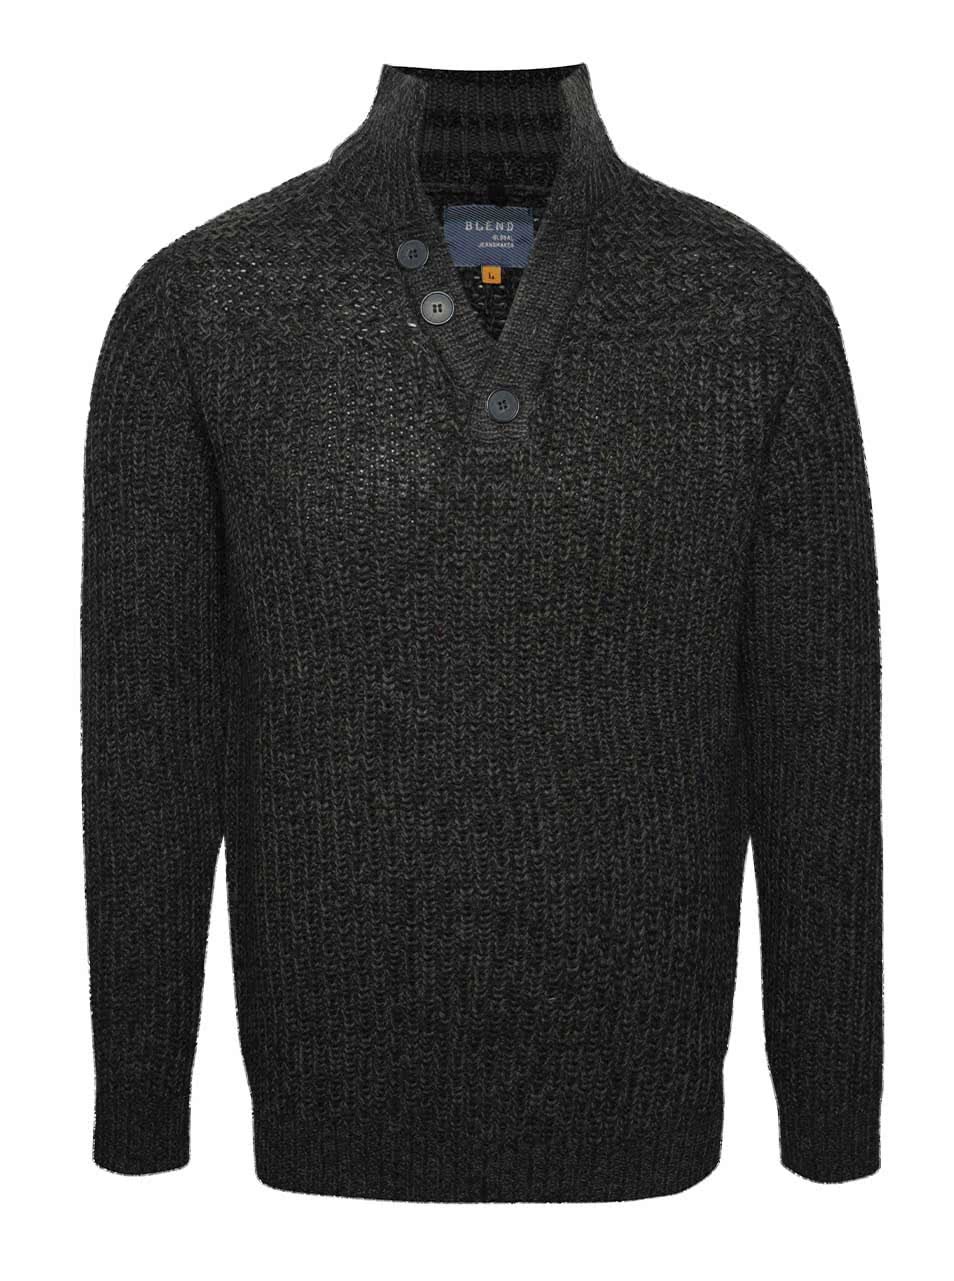 Tmavě šedý žíhaný svetr s knoflíky Blend